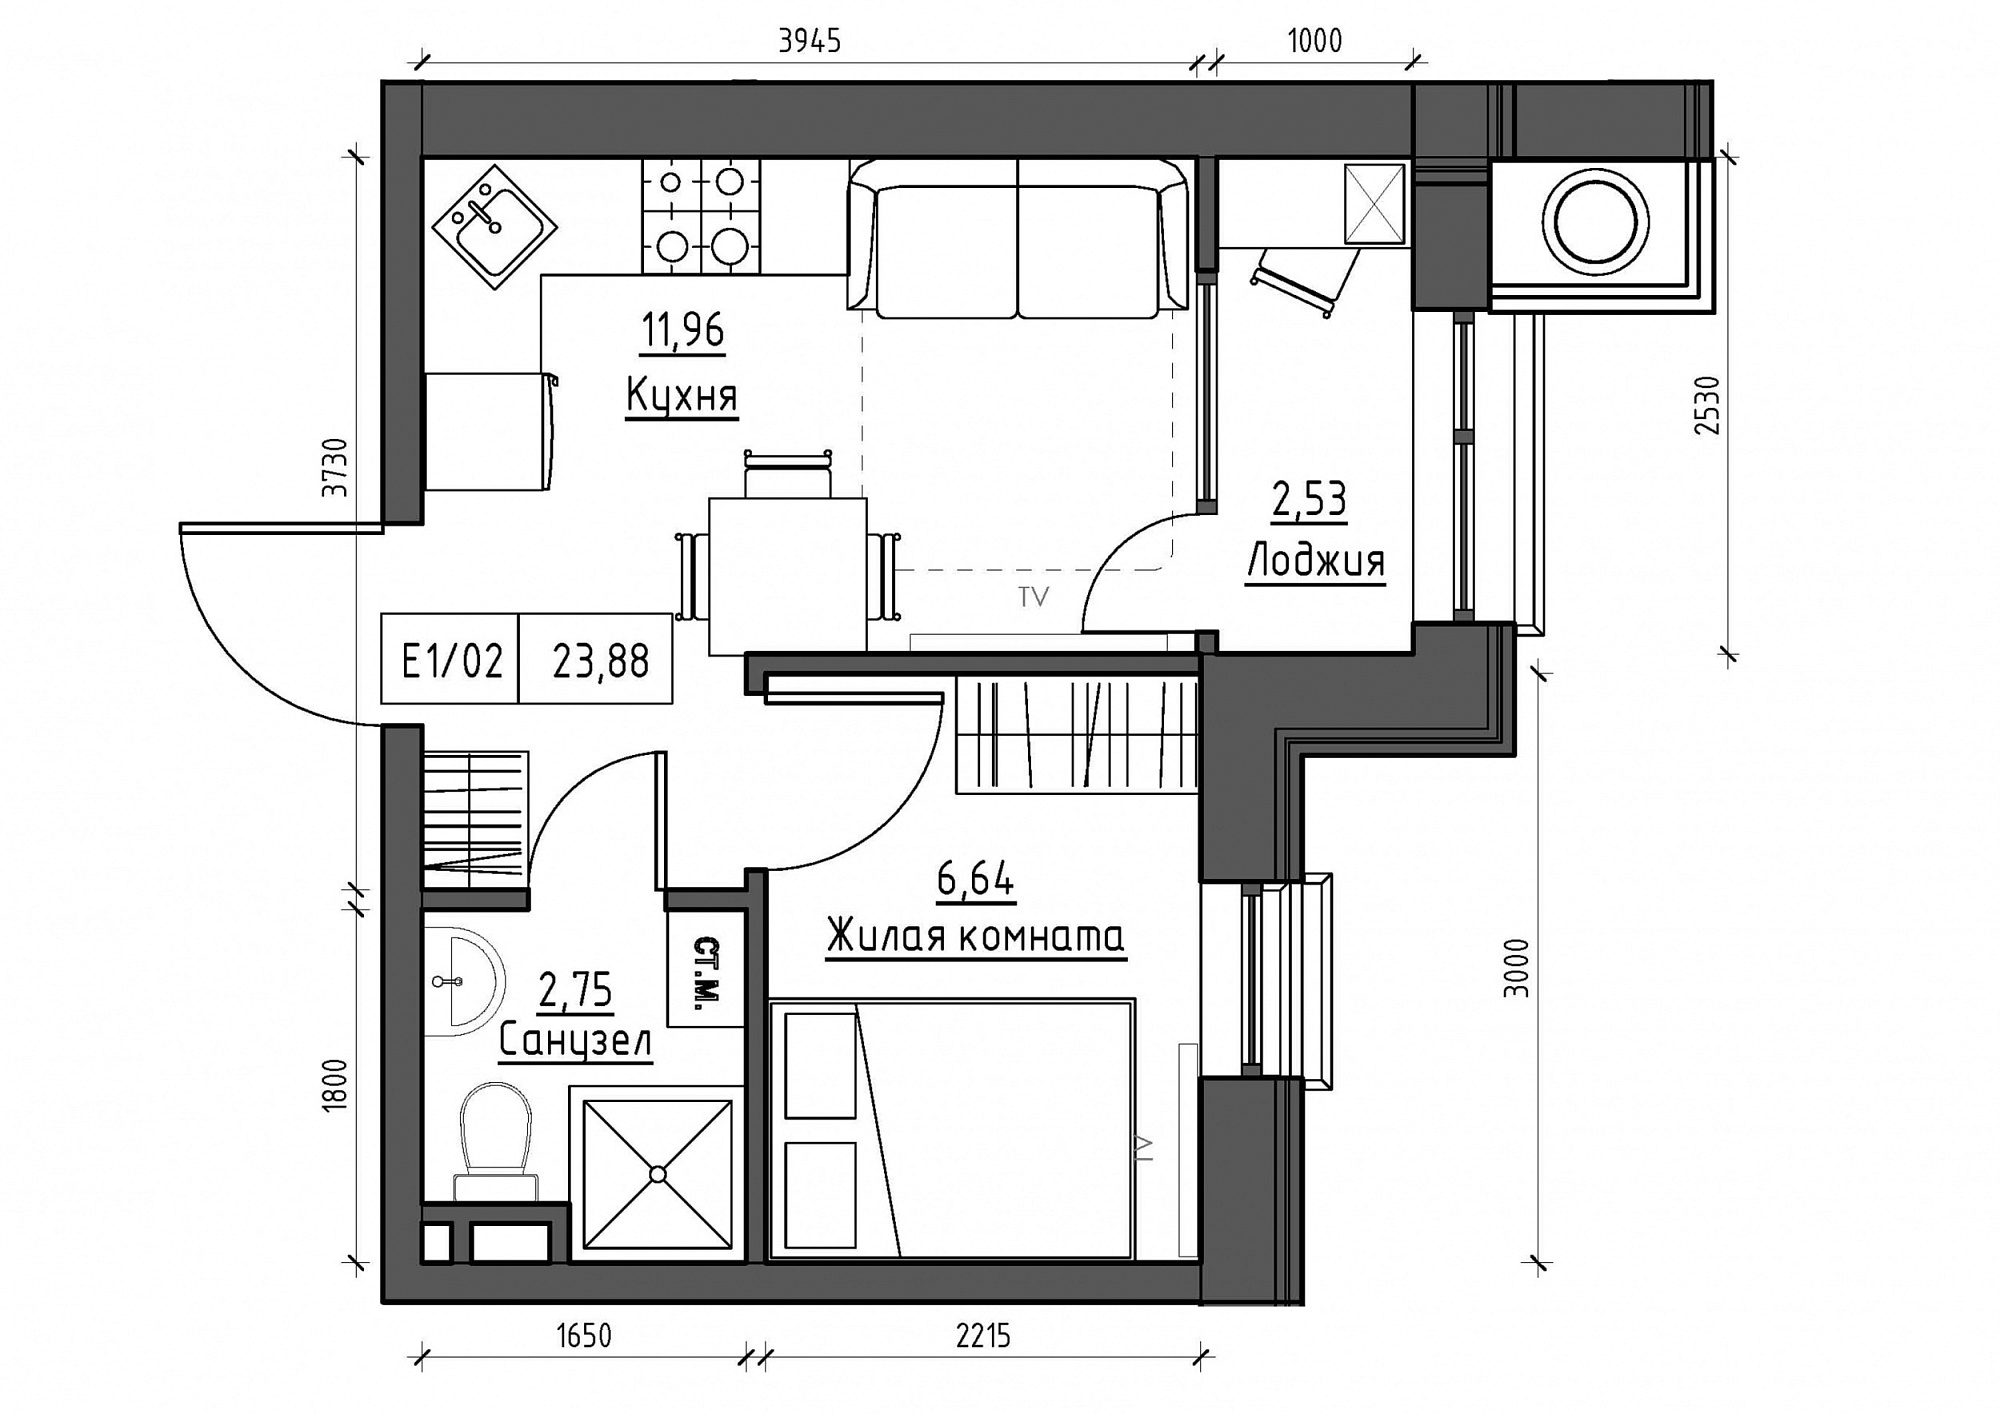 Планування 1-к квартира площею 23.88м2, KS-012-05/0018.